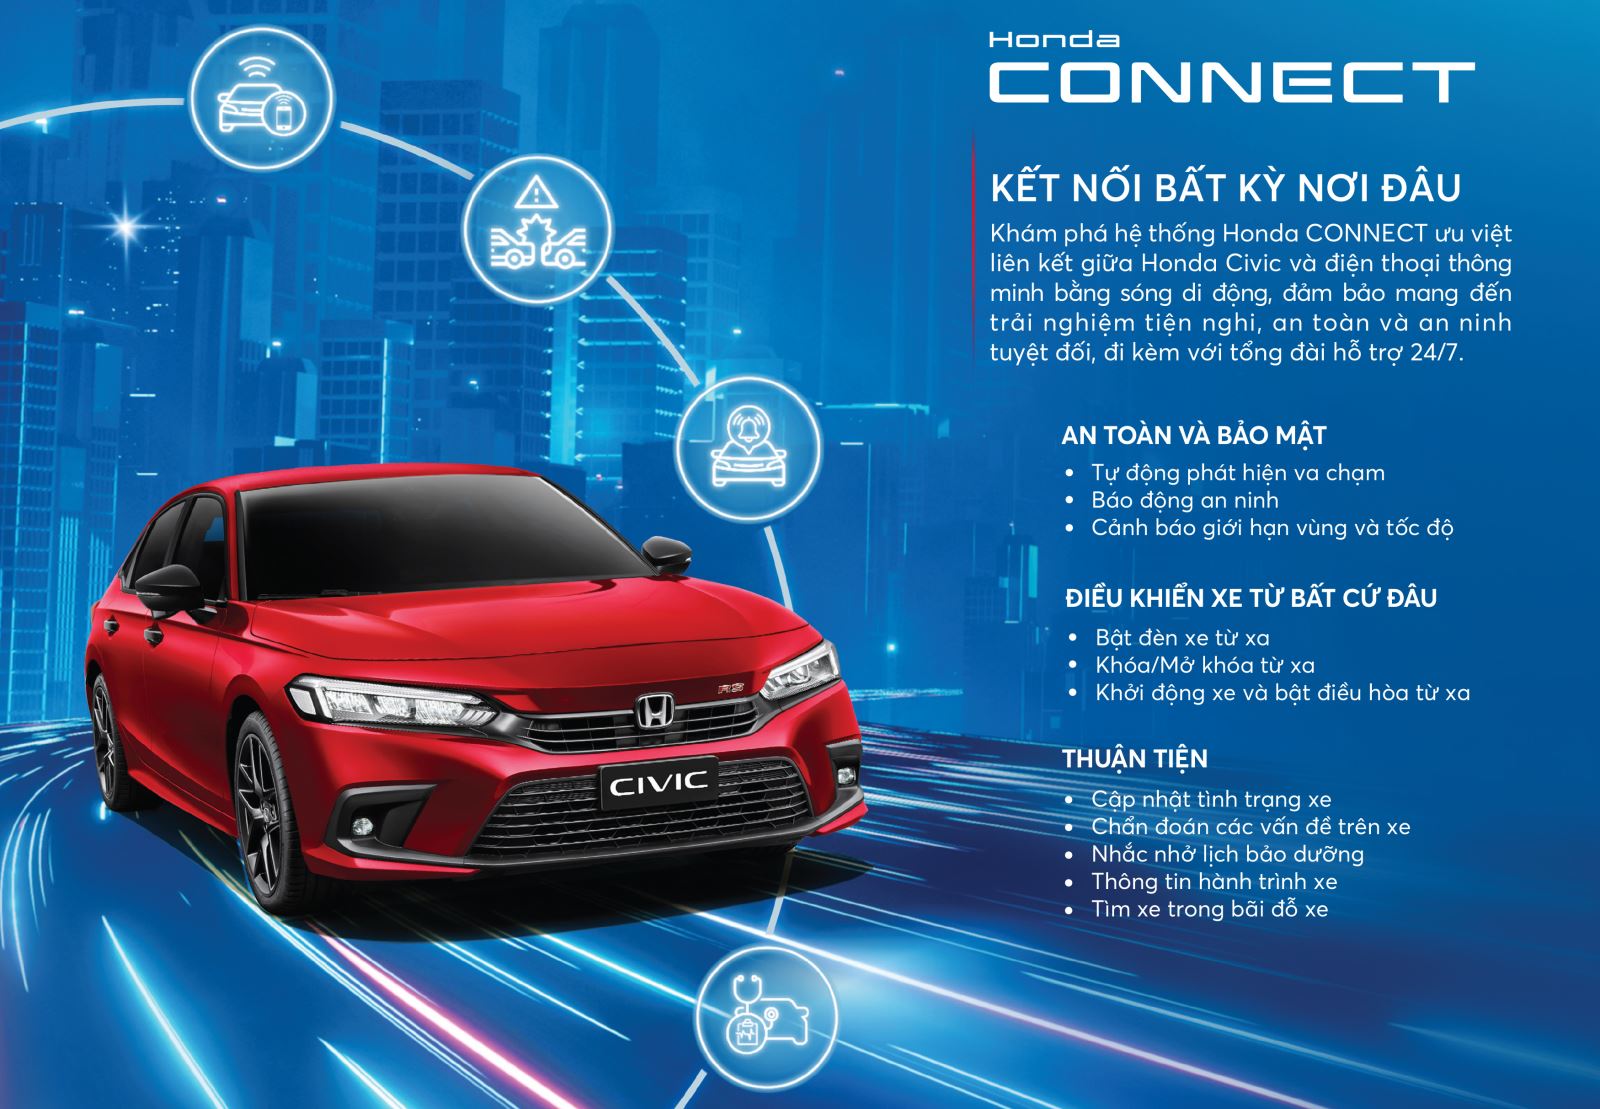 Honda Connect được phát triển và áp dụng lần đầu trên mẫu xe Honda Civic tại thị trường Việt Nam